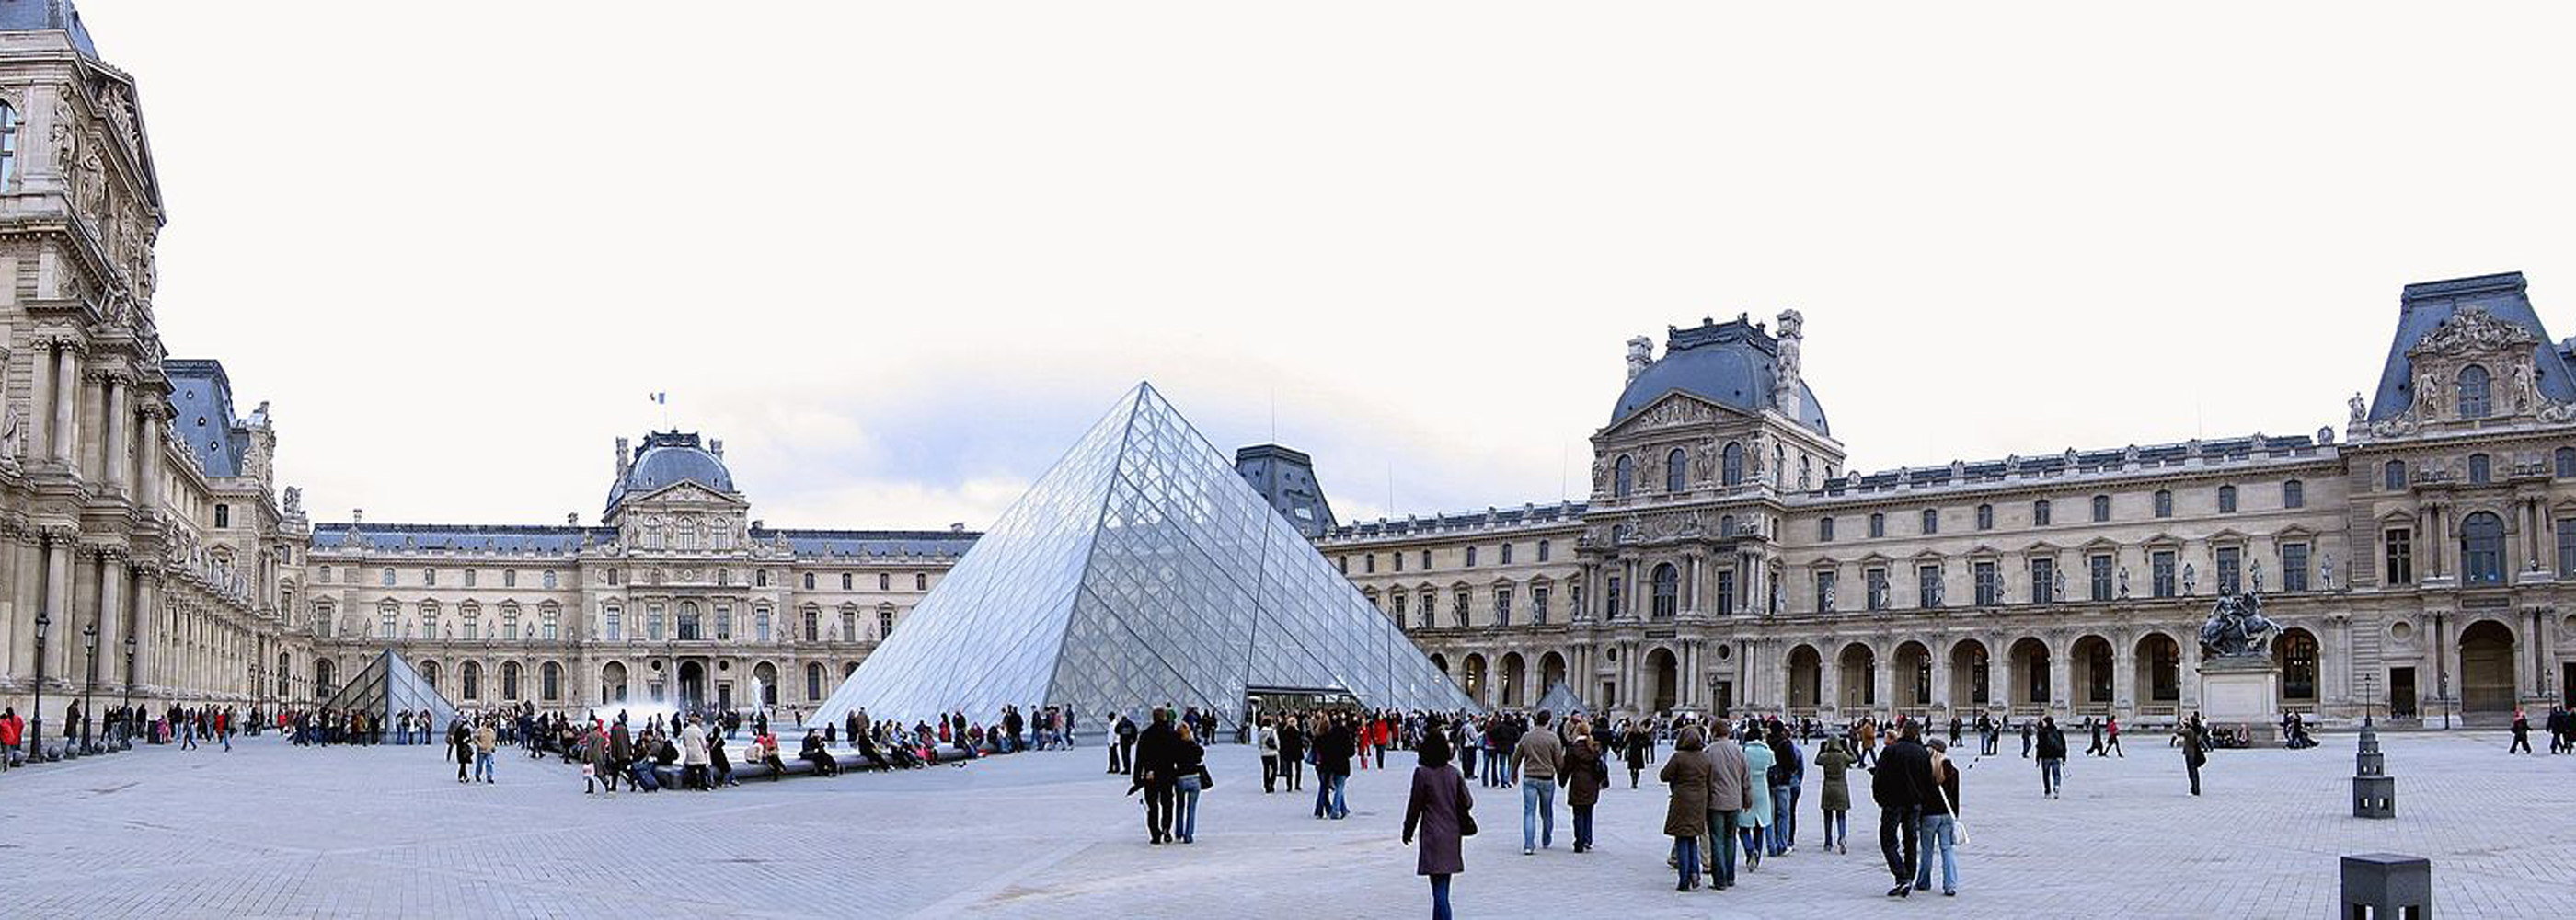 Louvre pres de Chatelet les Halles